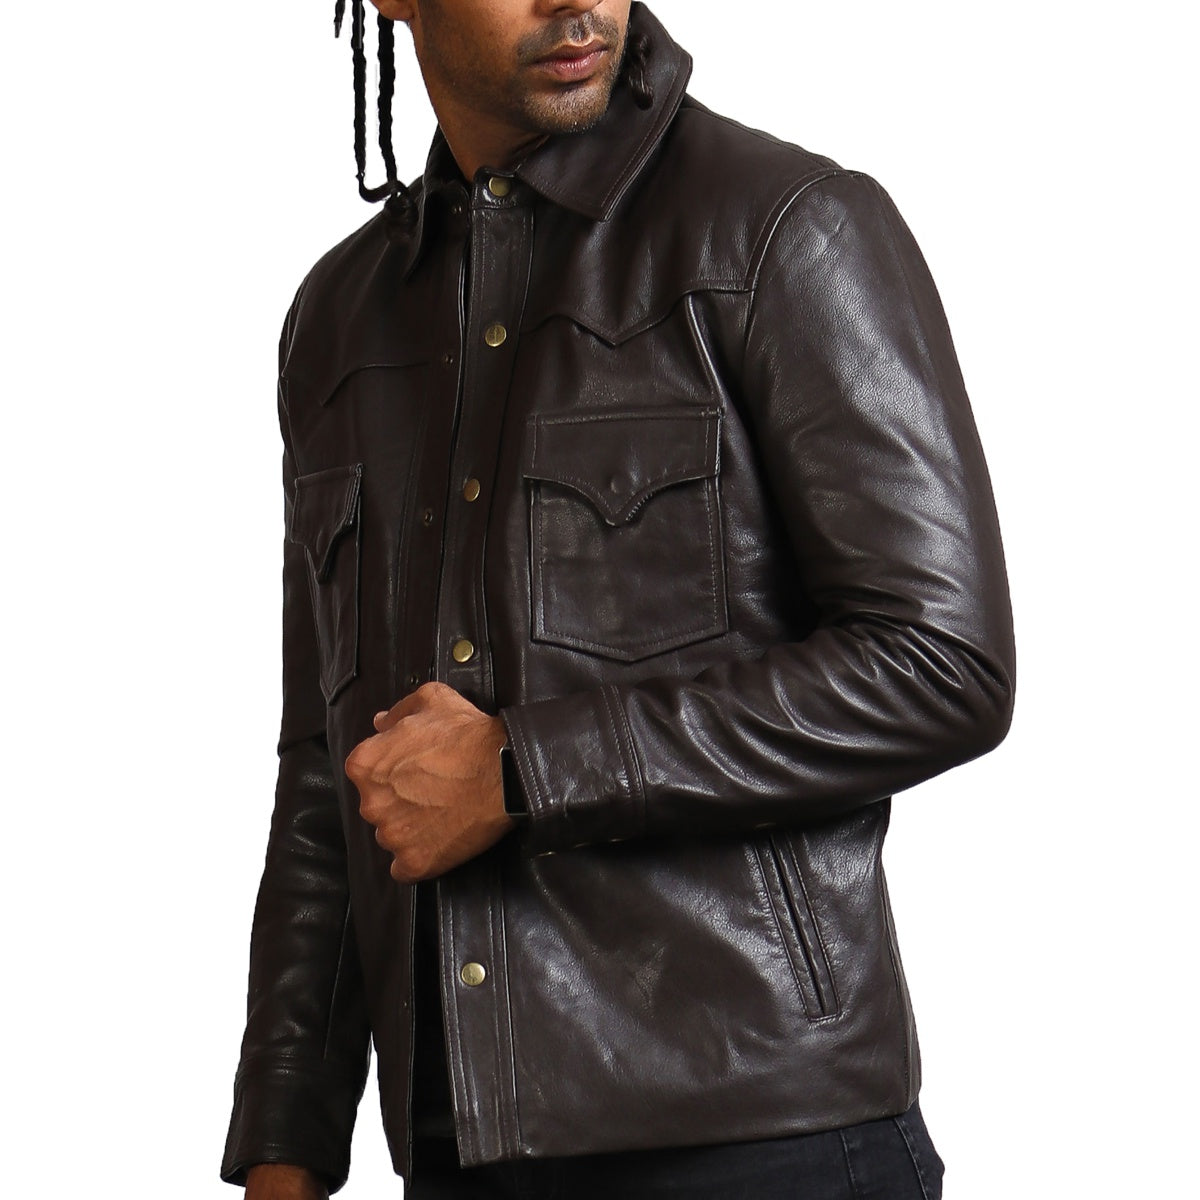  Trucker Dark Brown Leather Jacket